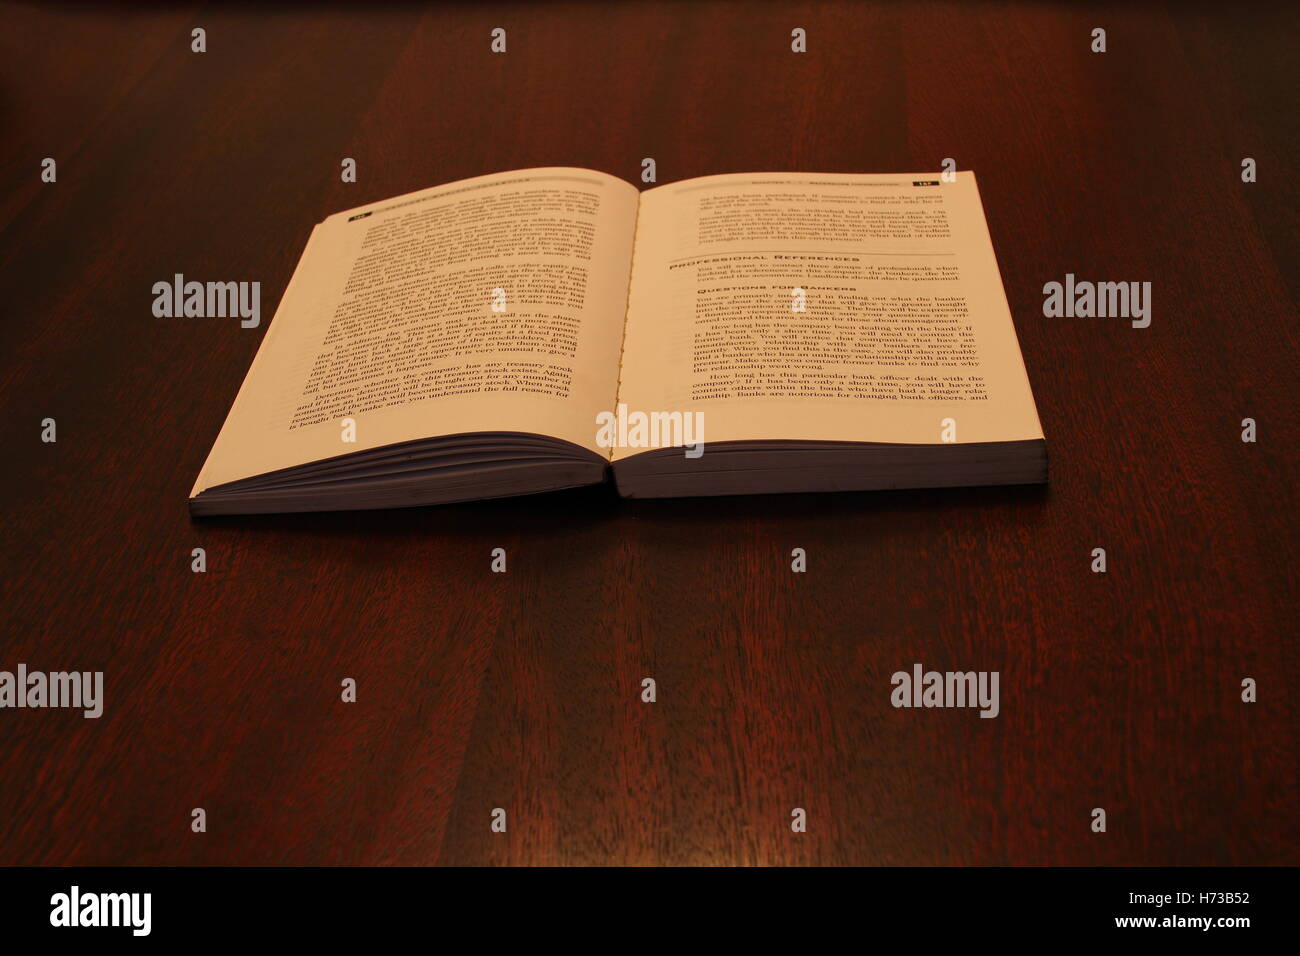 Ein offenes Buch aus weichem, warmem Licht auf einer hölzernen Oberfläche Bild mit Kopie Raum im Querformat isoliert Stockfoto